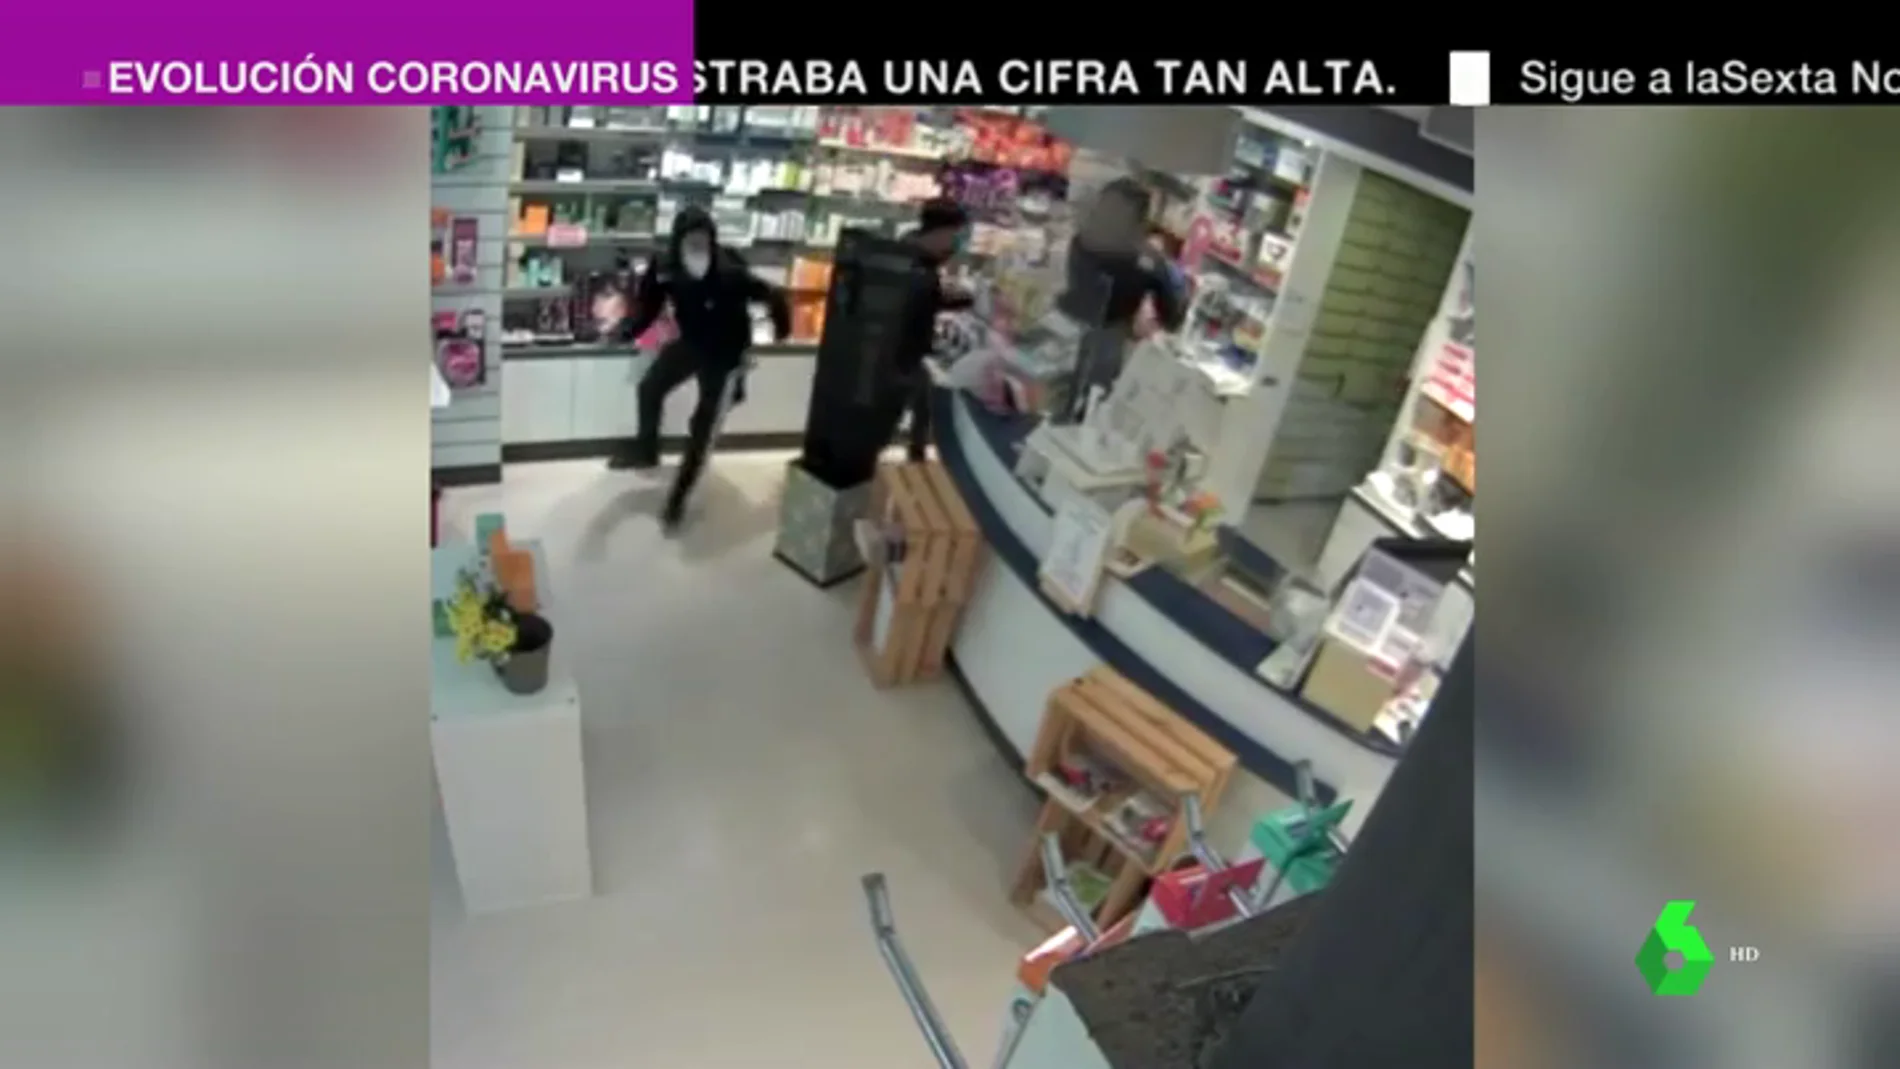 Cuatro encapuchados atracan una farmacia en Barcelona y agreden con un palo a la empleada